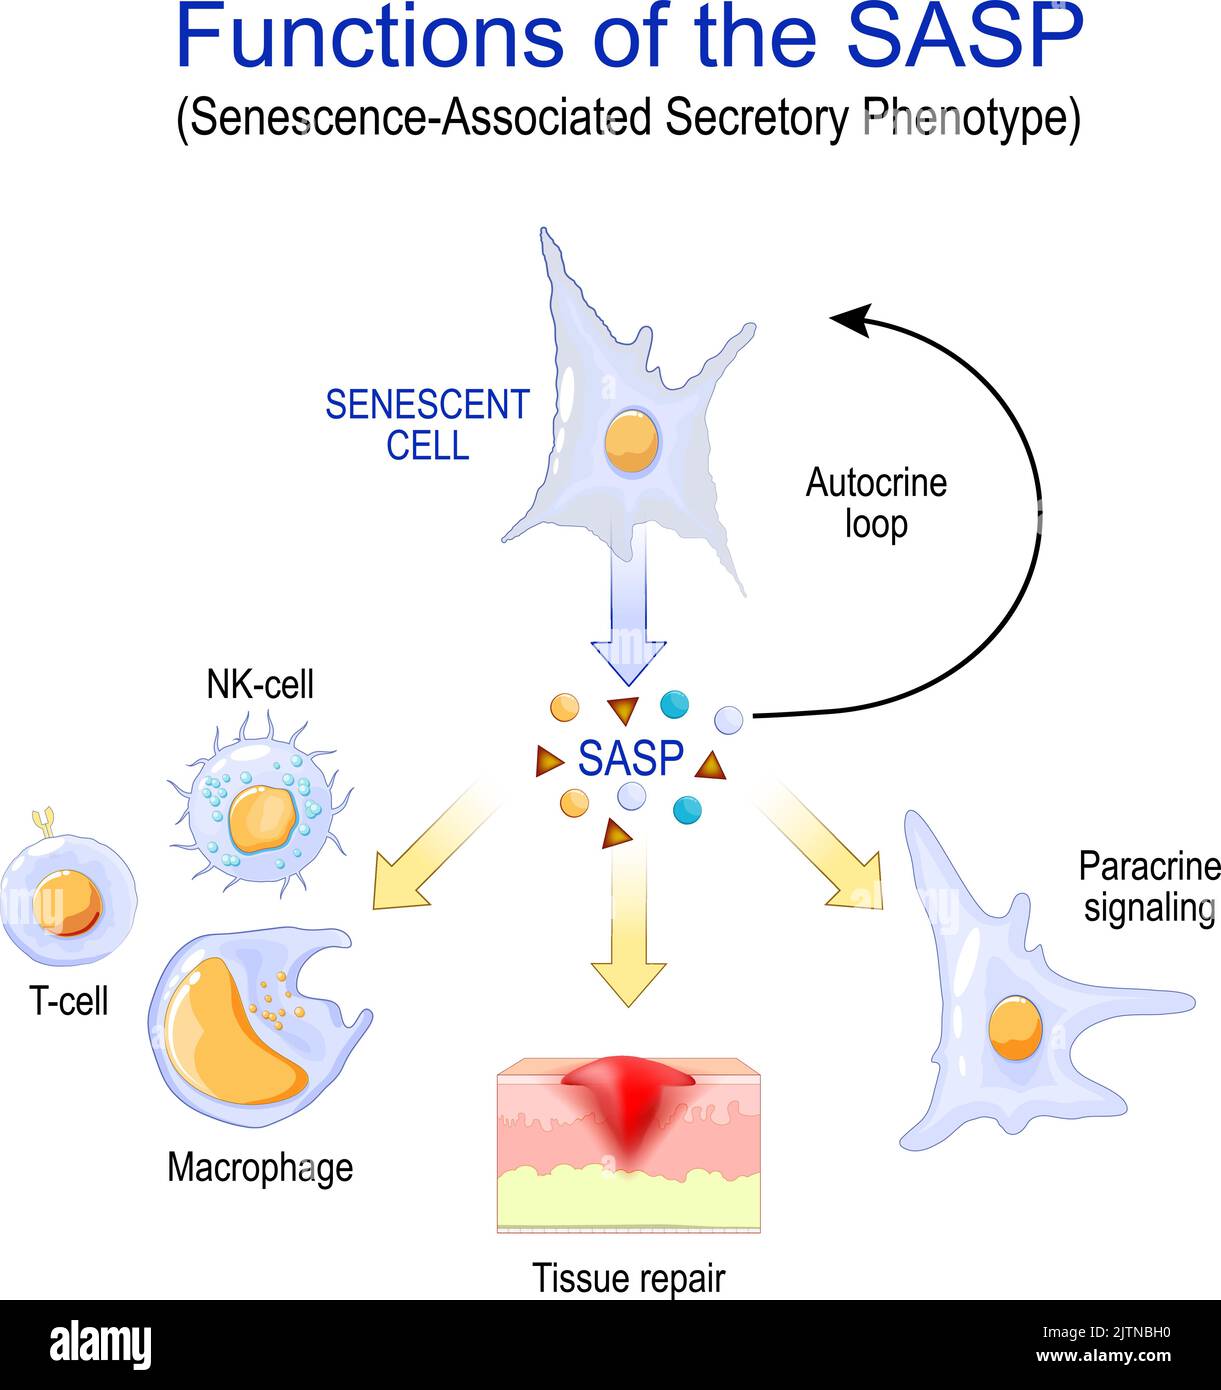 Senescencia celular. Funciones del SASP. Fenotipo secretor asociado a la senescencia. Cambia las células senescentes durante el envejecimiento. Diseminación de la senescencia Ilustración del Vector